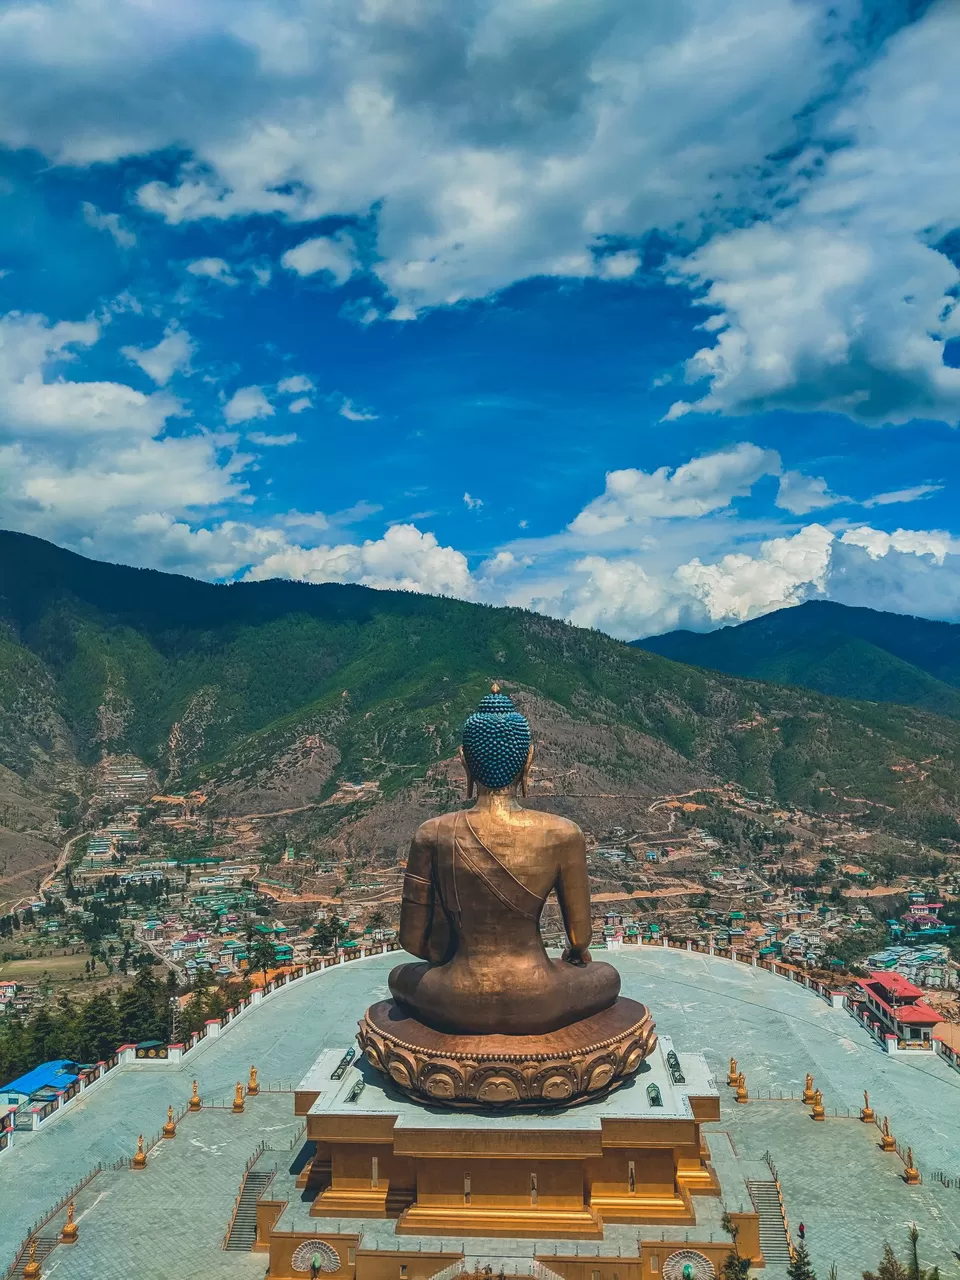 Photo of Thimphu, Bhutan by Mouna Nanaiah